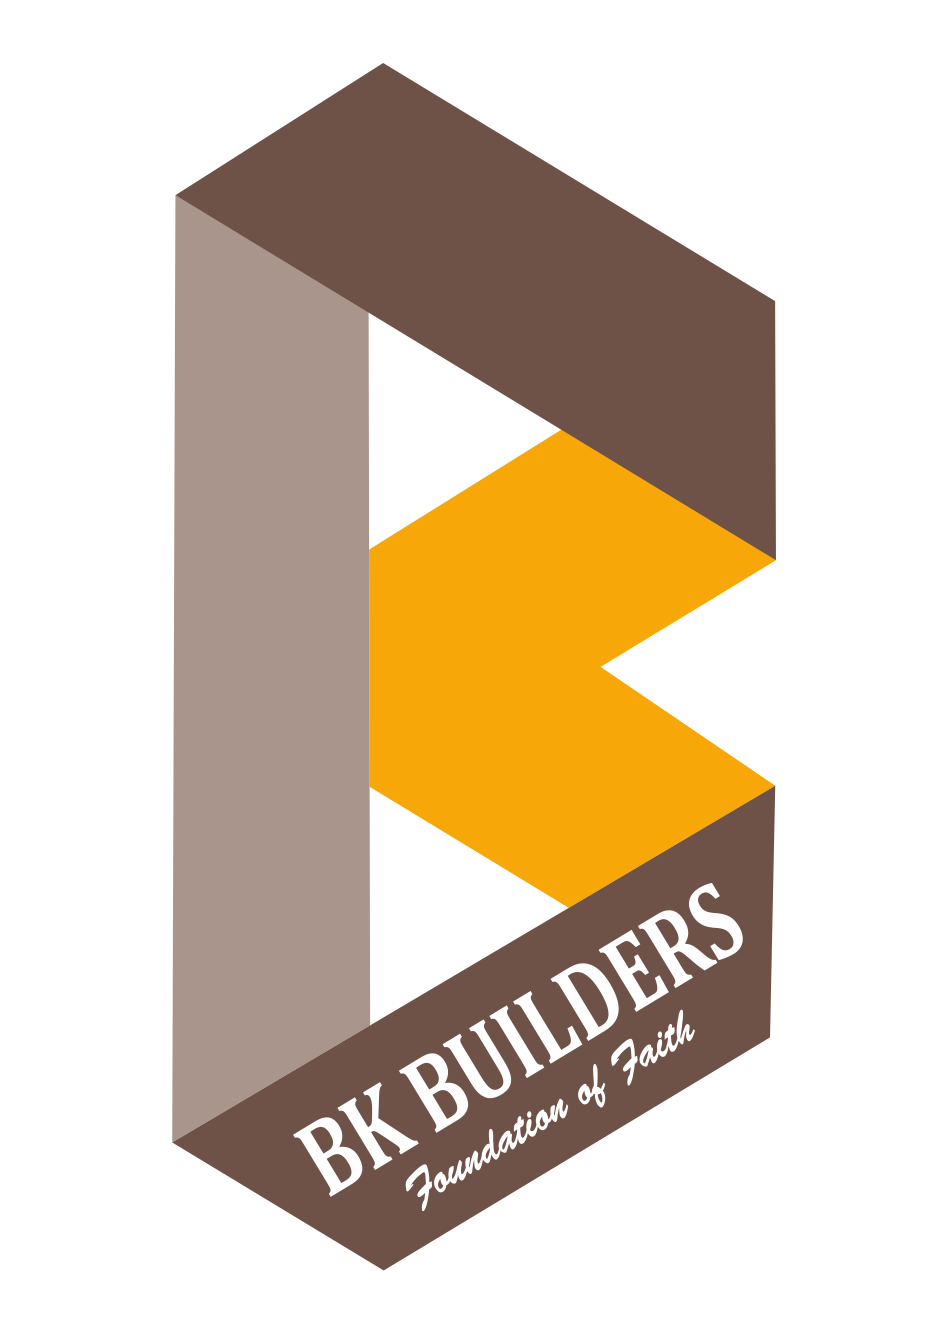 BK Builder